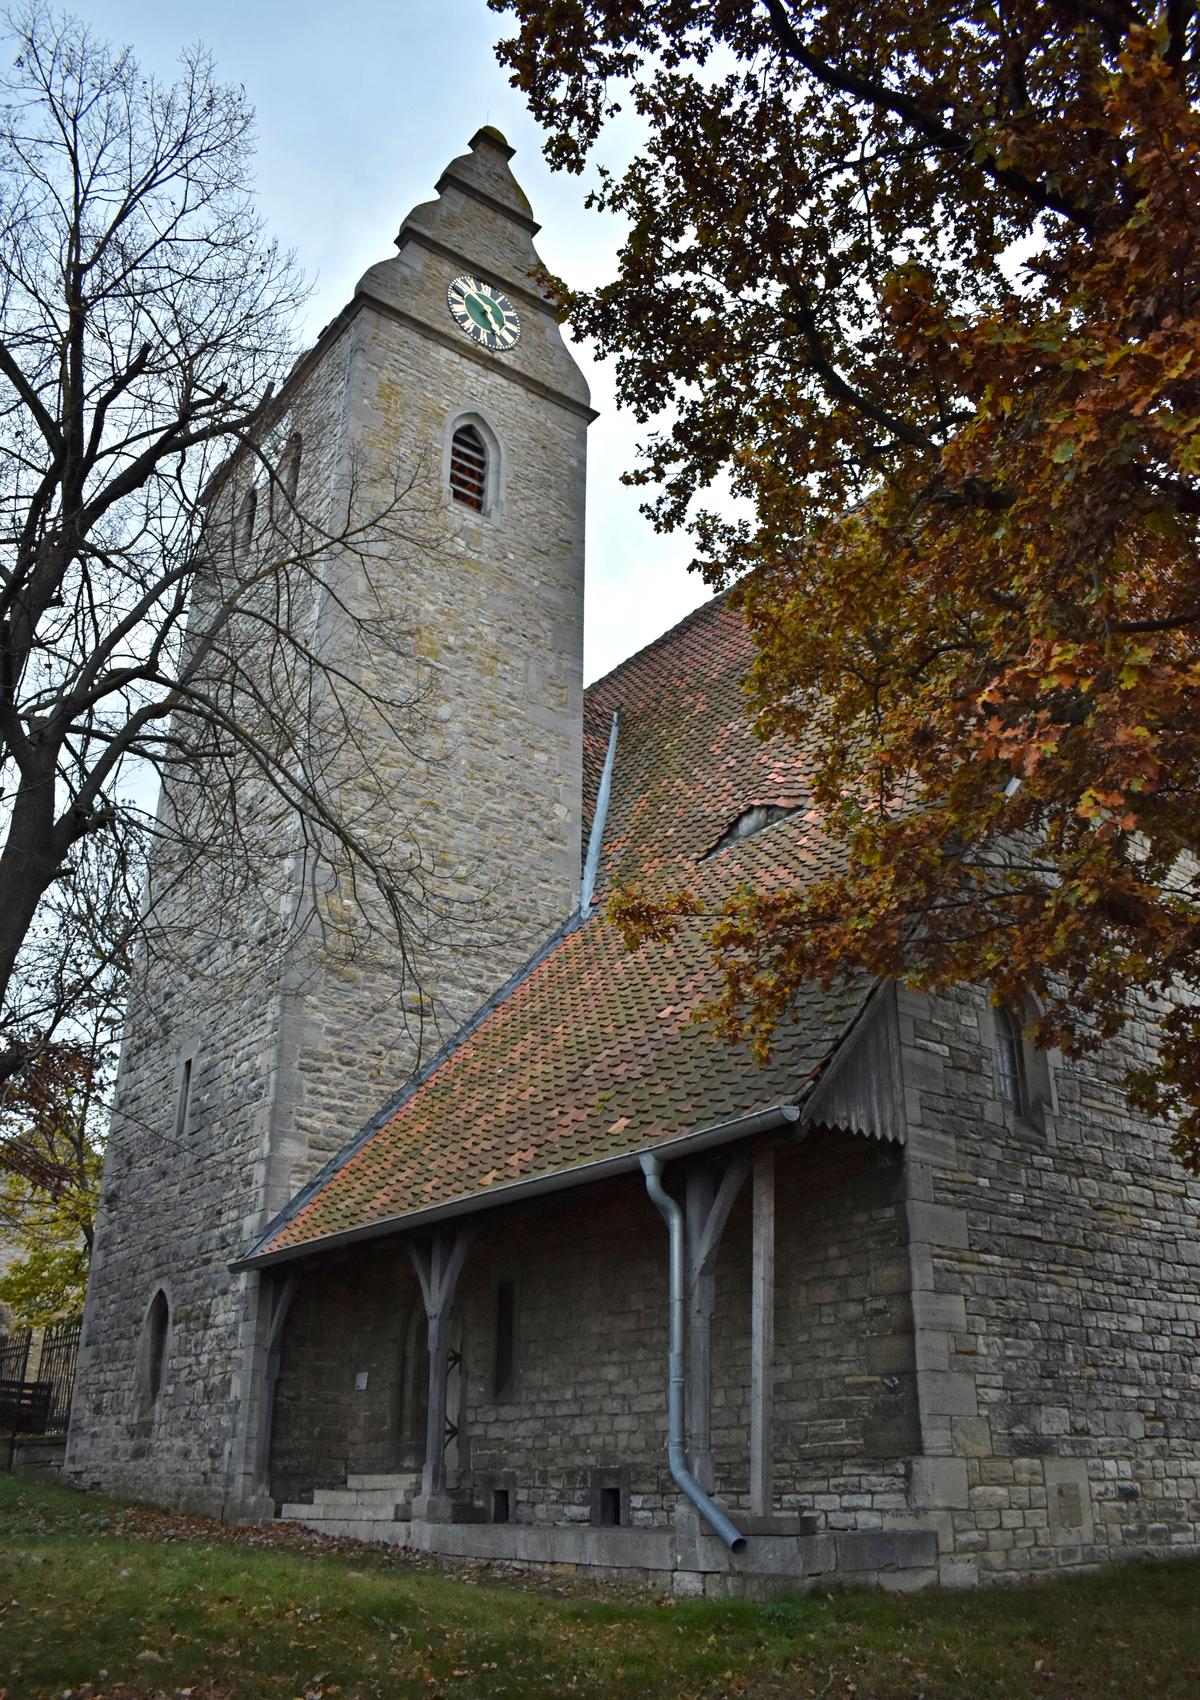 Die nördliche Seite der Neuwegersleber Kirche wird vom Turm bestimmt, in dem zwei Glocken hängen.